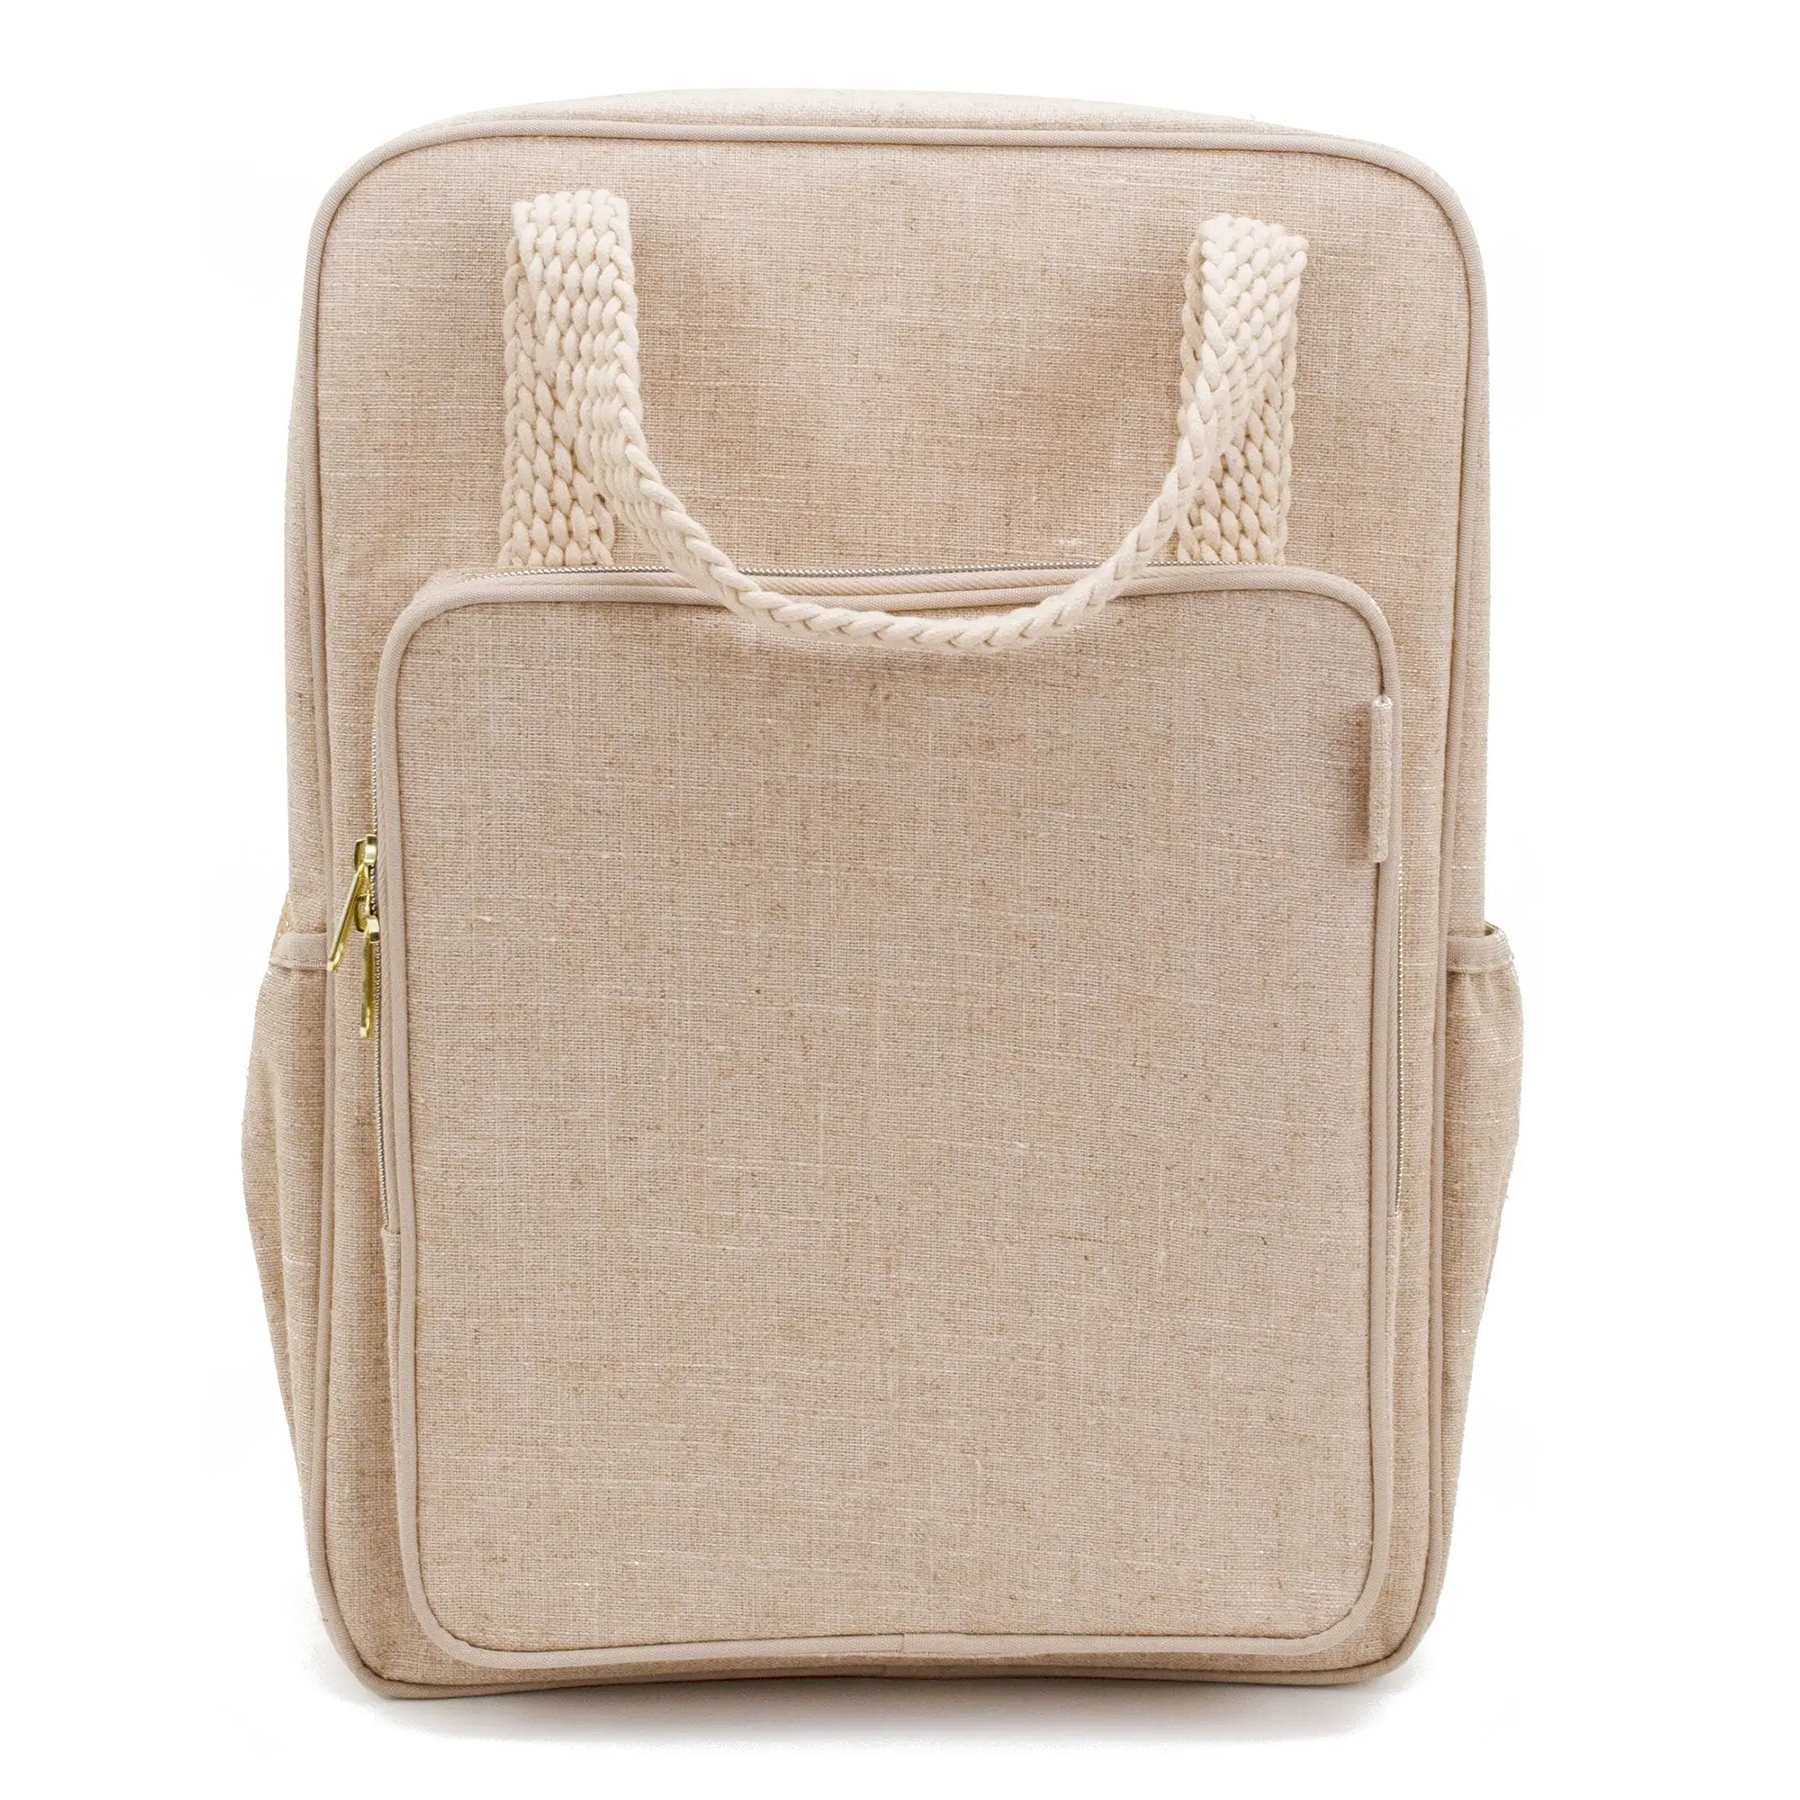 Natural linen backpack